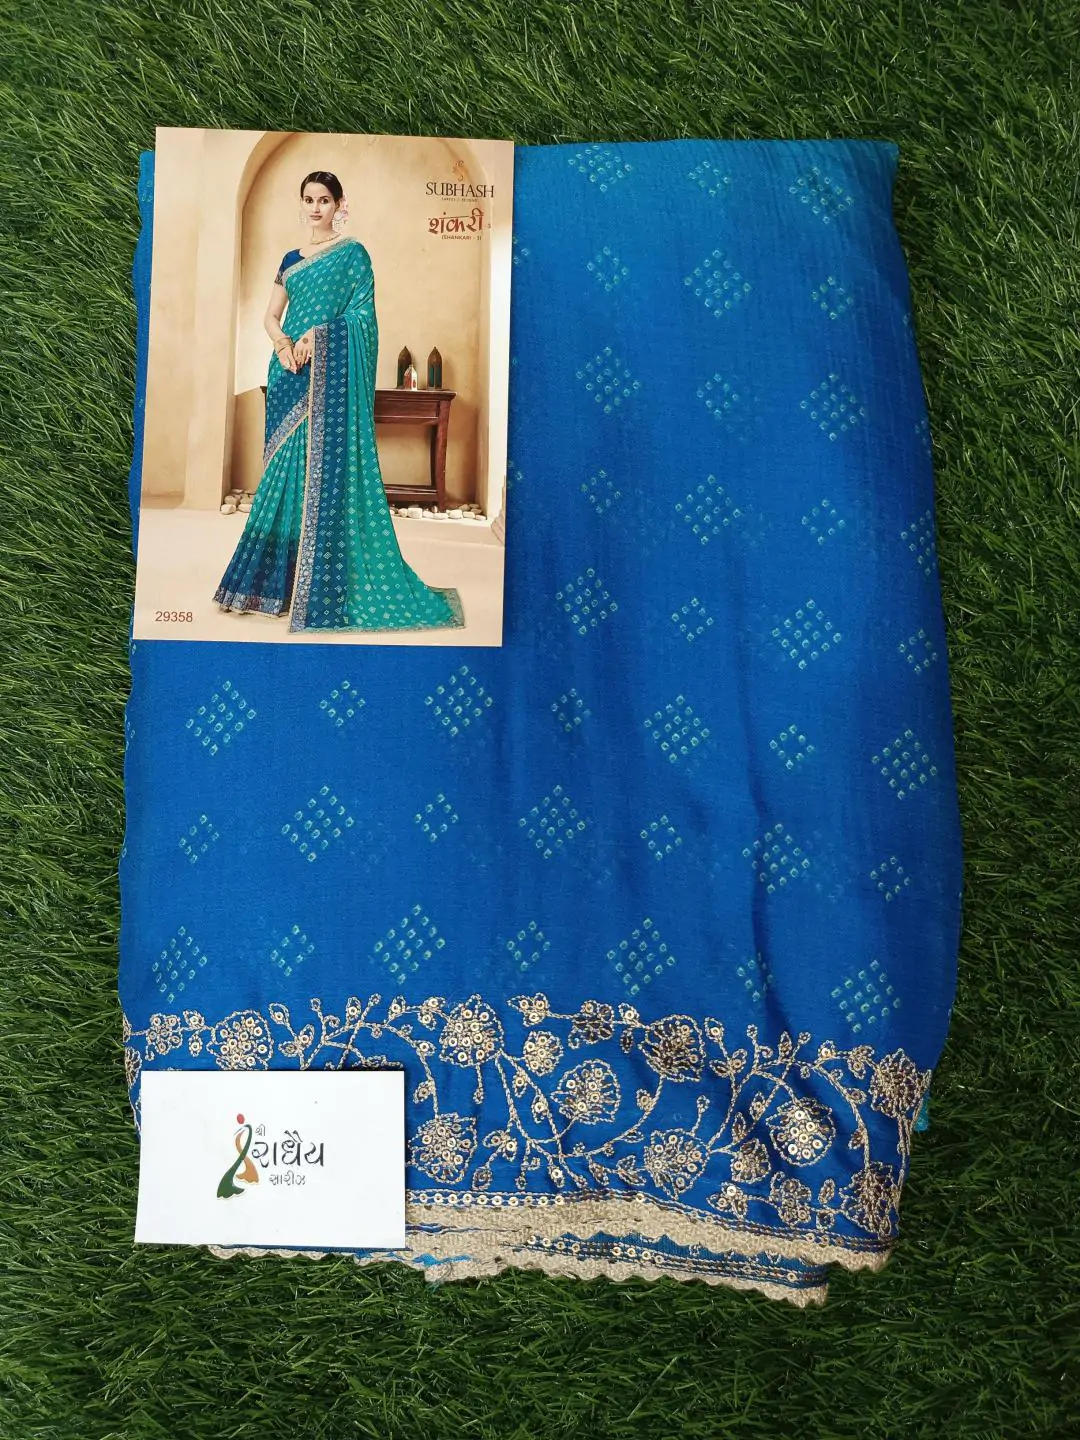 Laxmipati Printed Saree